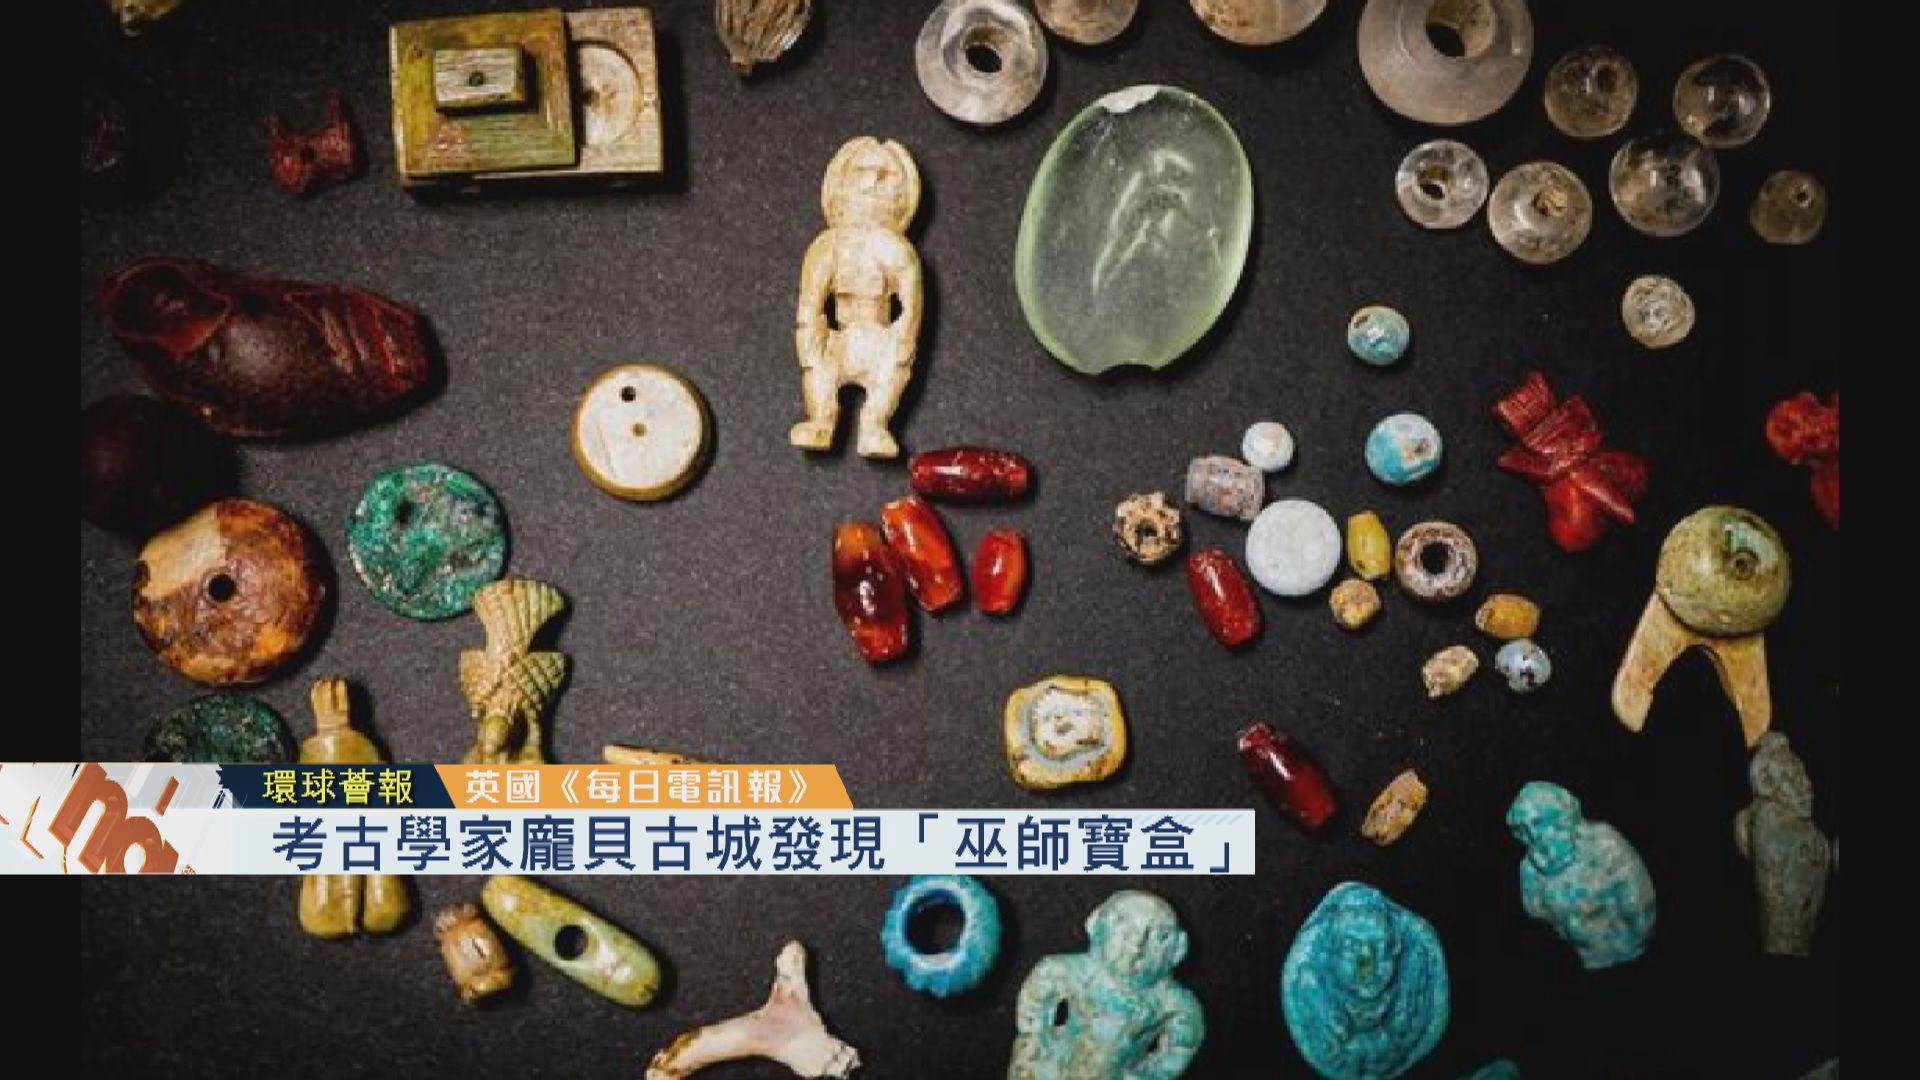 【環球薈報】考古學家龐貝古城發現「巫師寶盒」